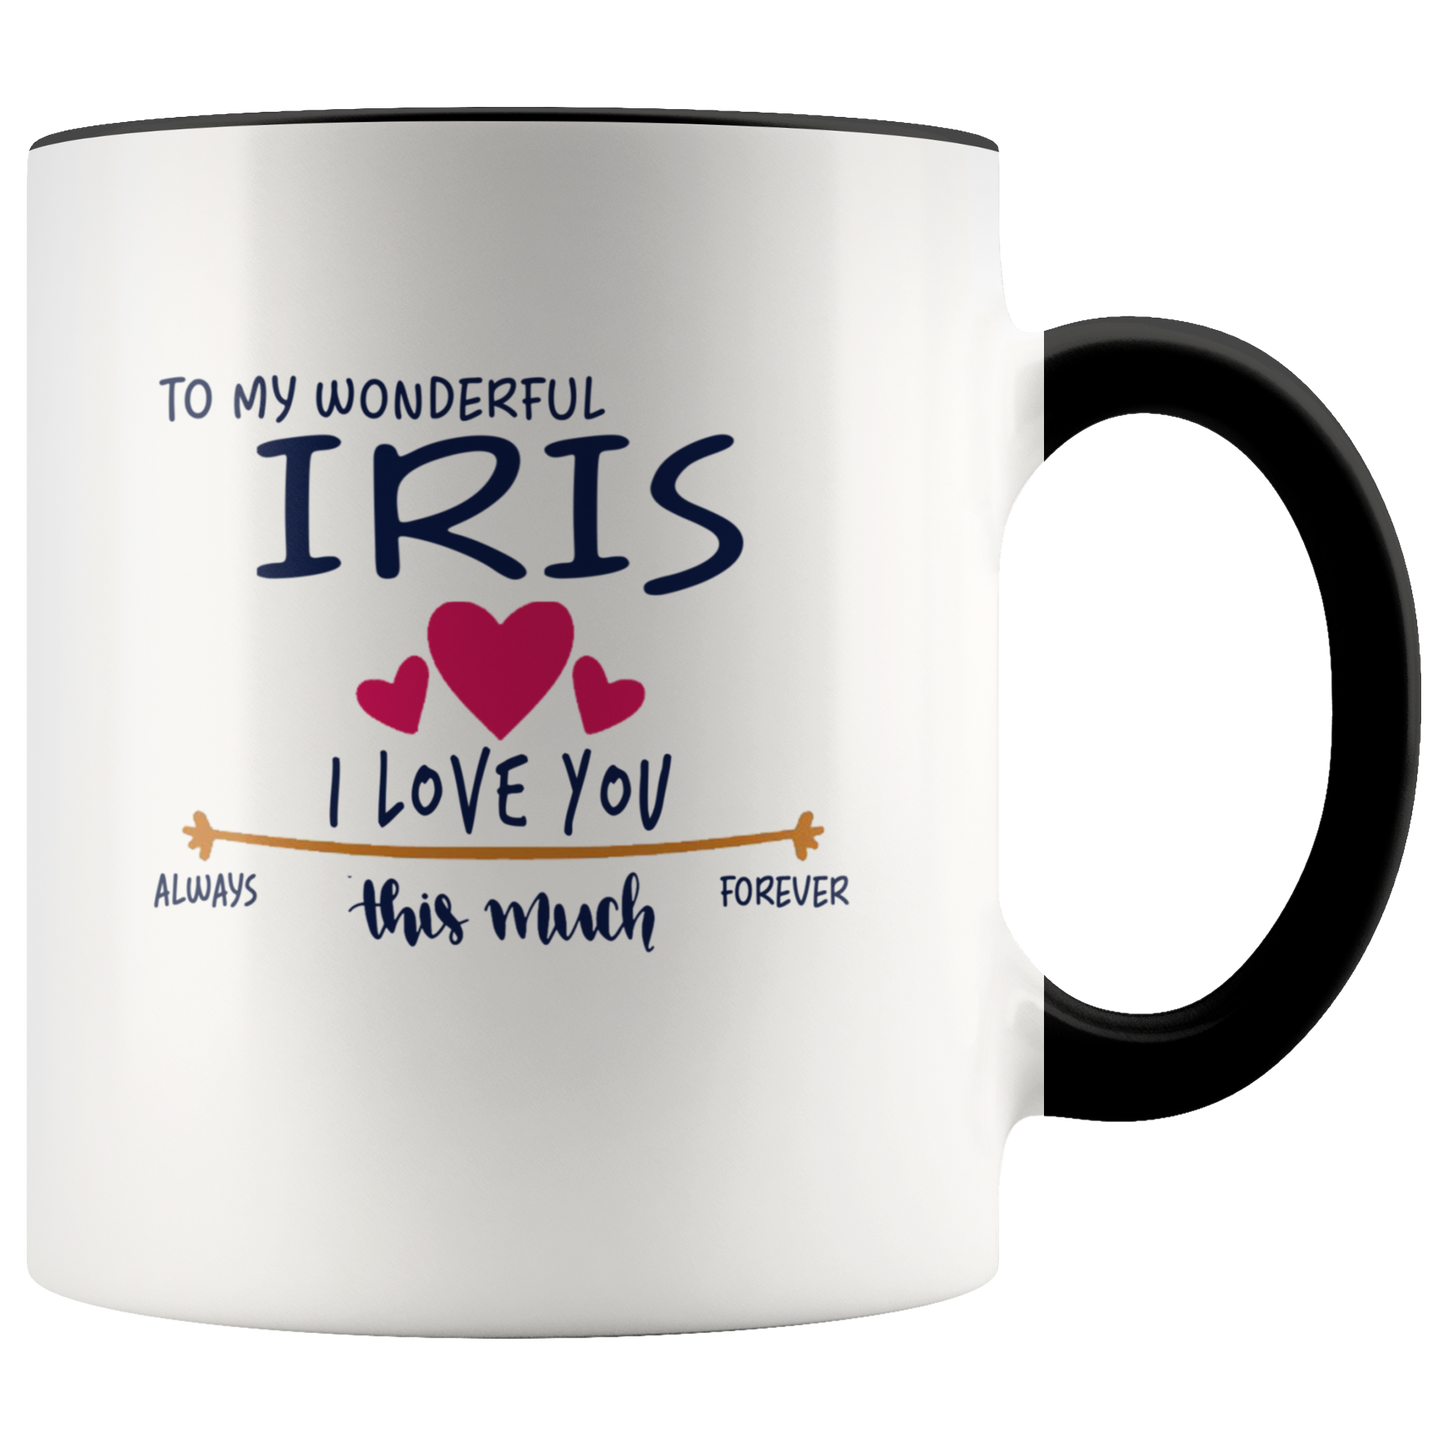 M-21259220-sp-22826 - Valentines Day Coffee Mug With Name Iris - To My Wonderful I